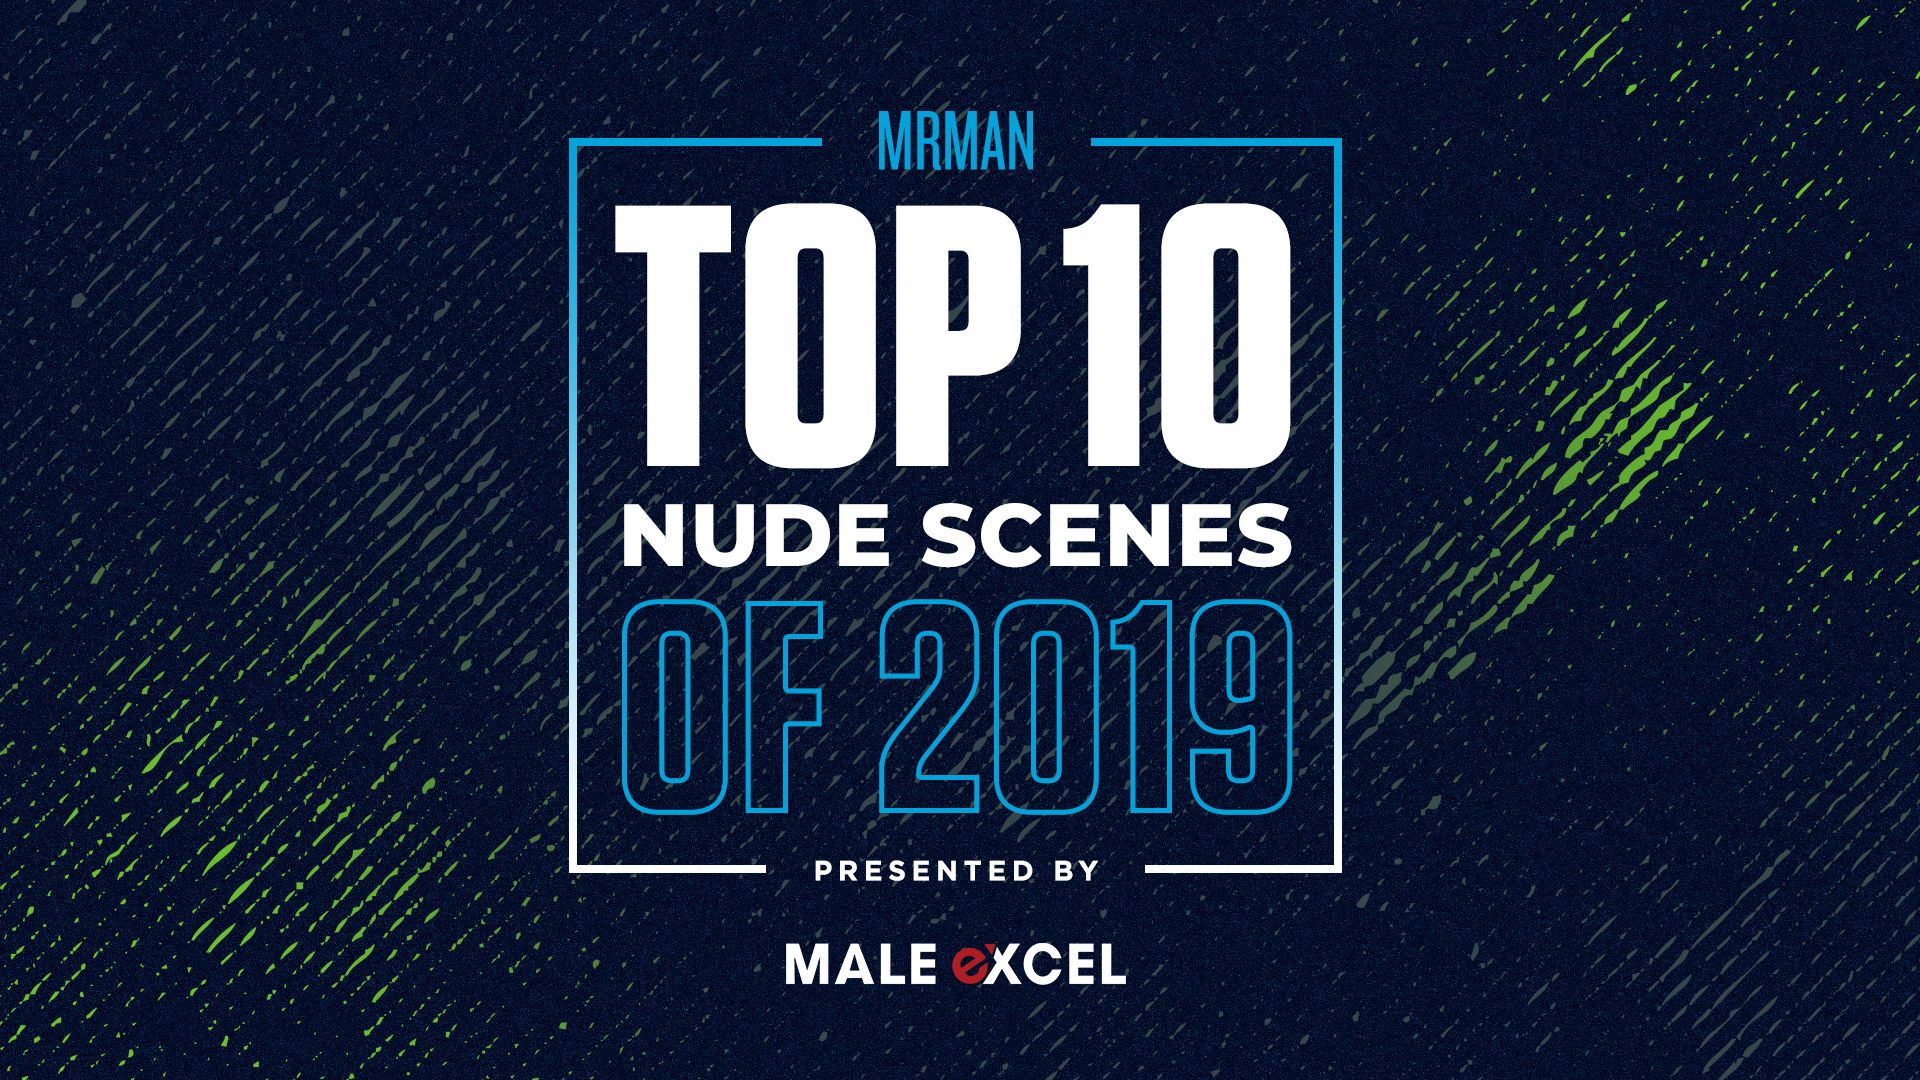 Mr. Man's Top 10 Nude Scenes of 2019